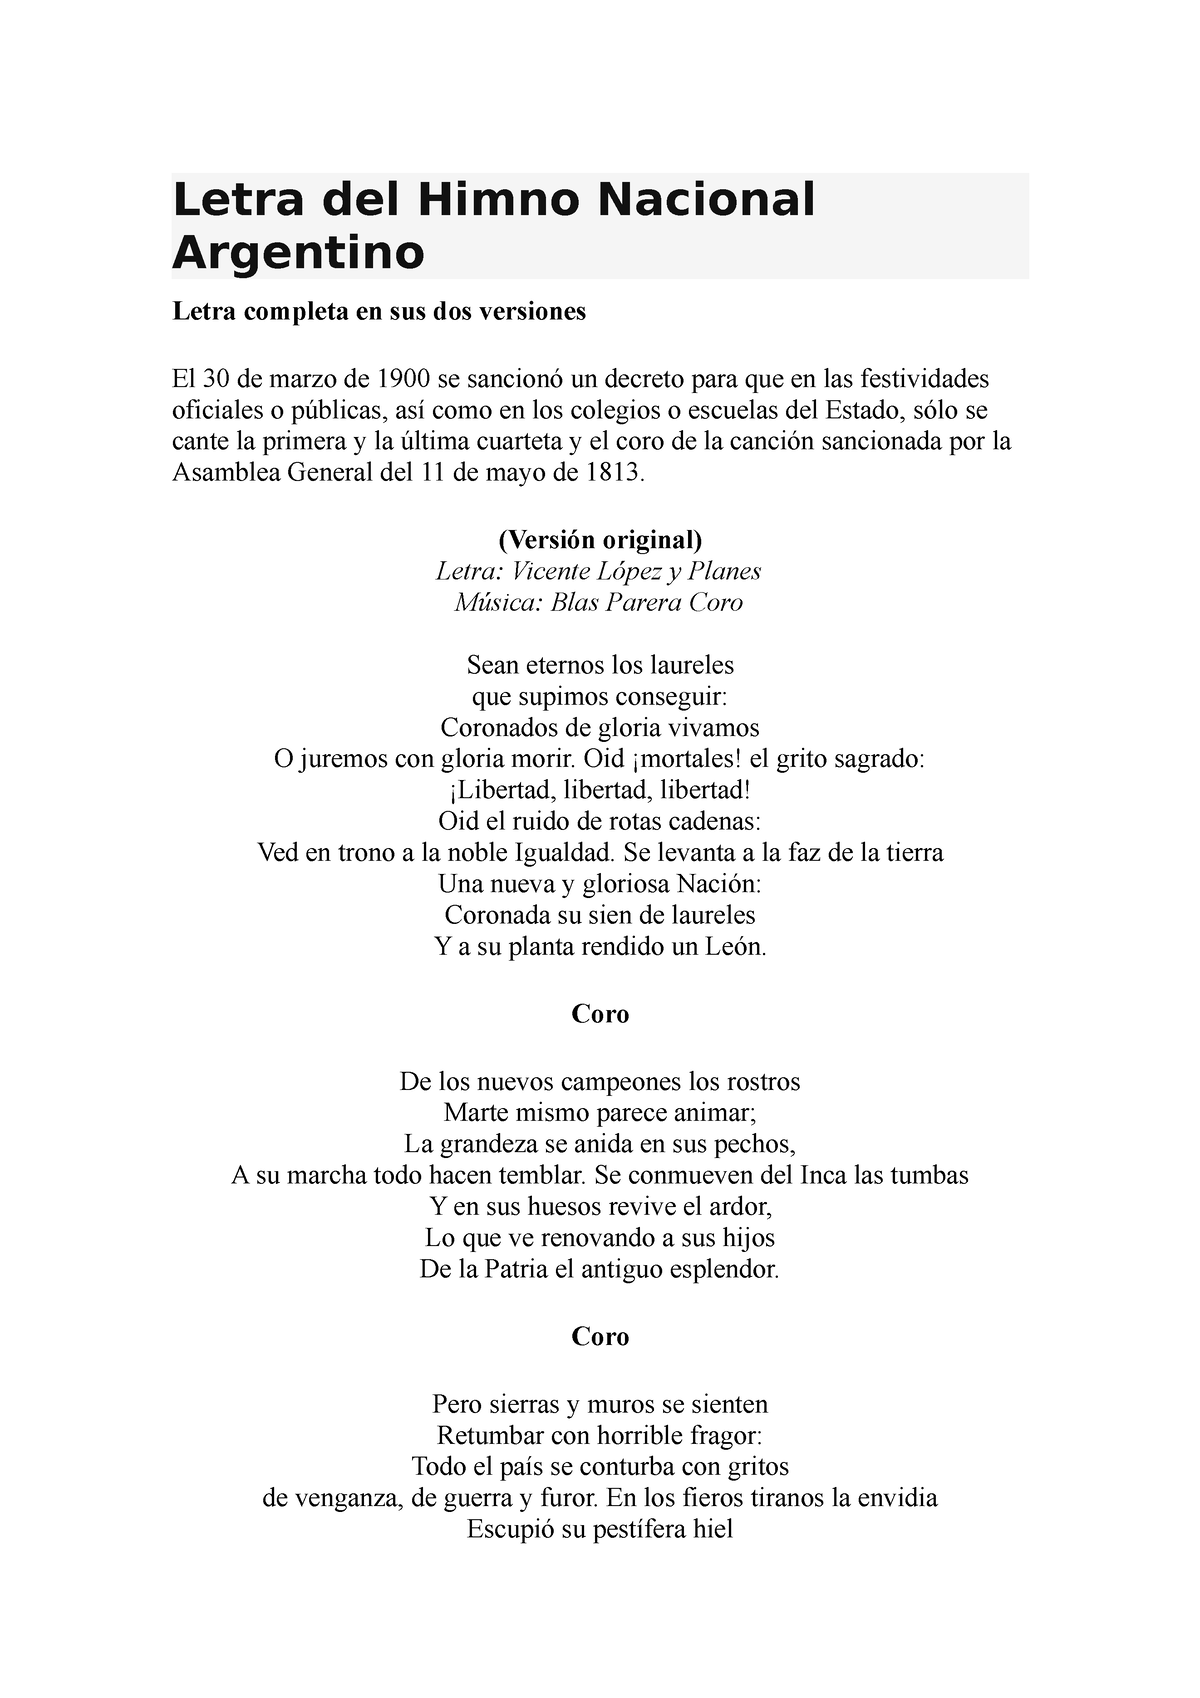 Letra Del Himno Nacional Argentino Letra Del Himno Nacional Argentino Letra Completa En Sus